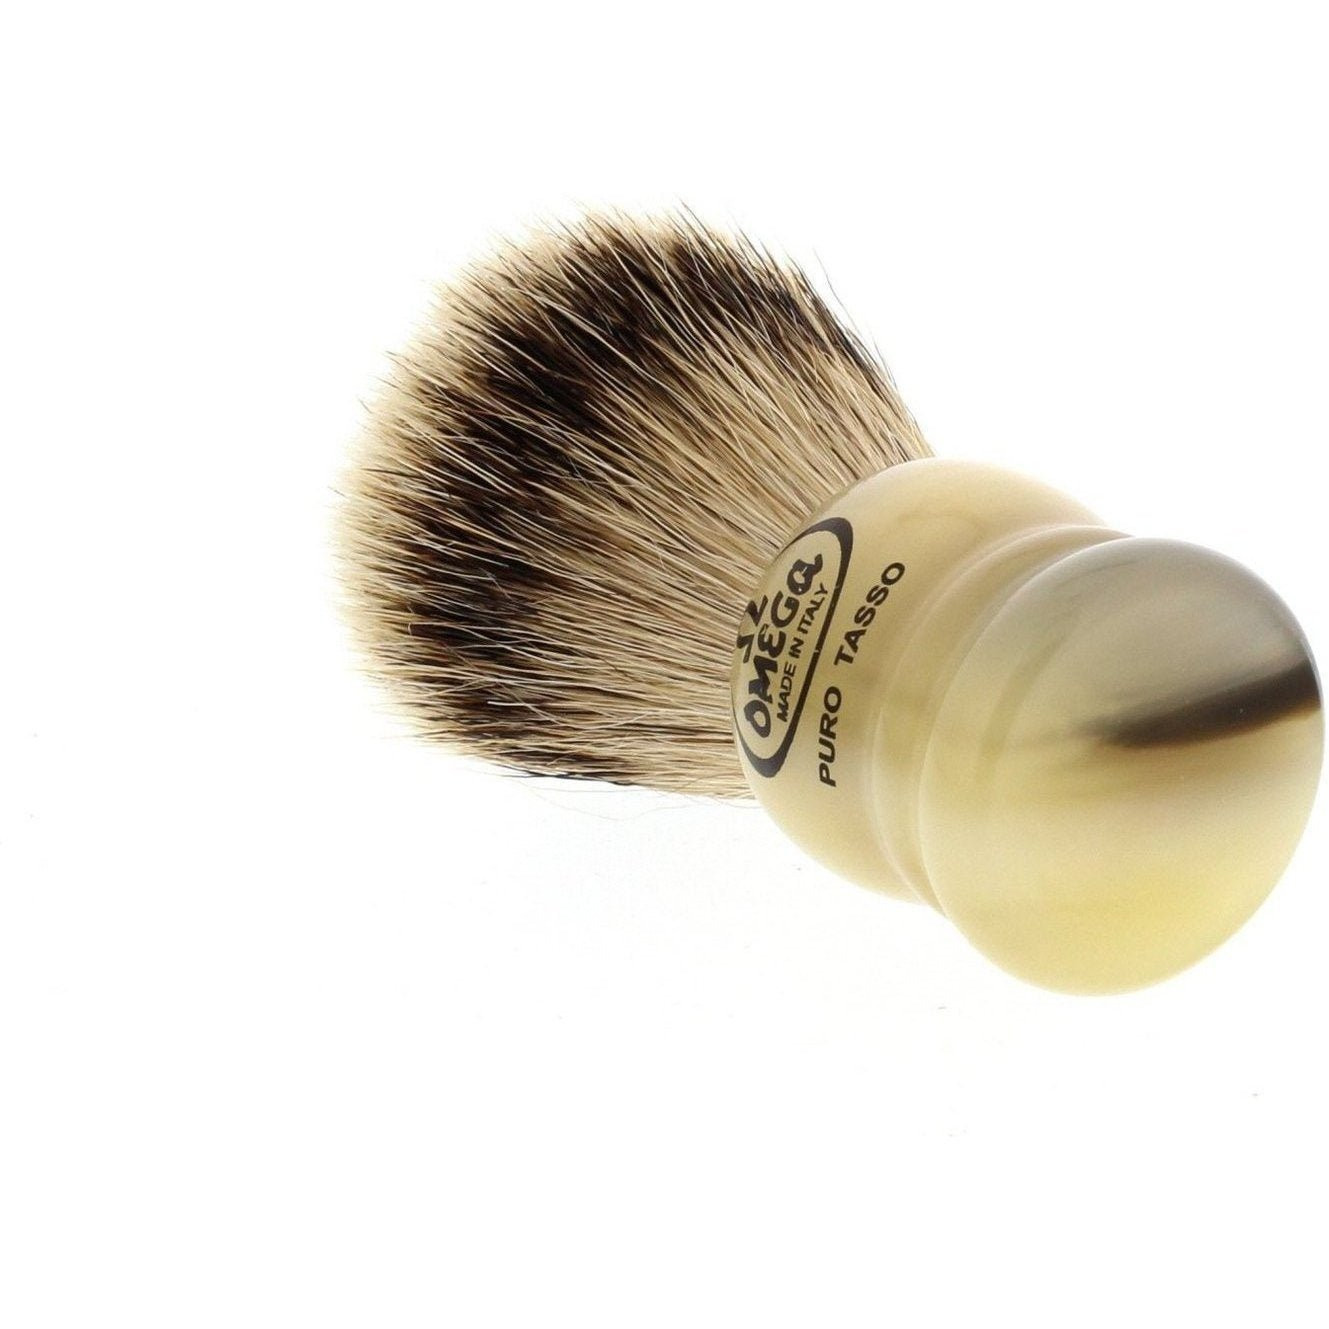 Product image 3 for Omega 599 Silvertip Badger Shaving Brush